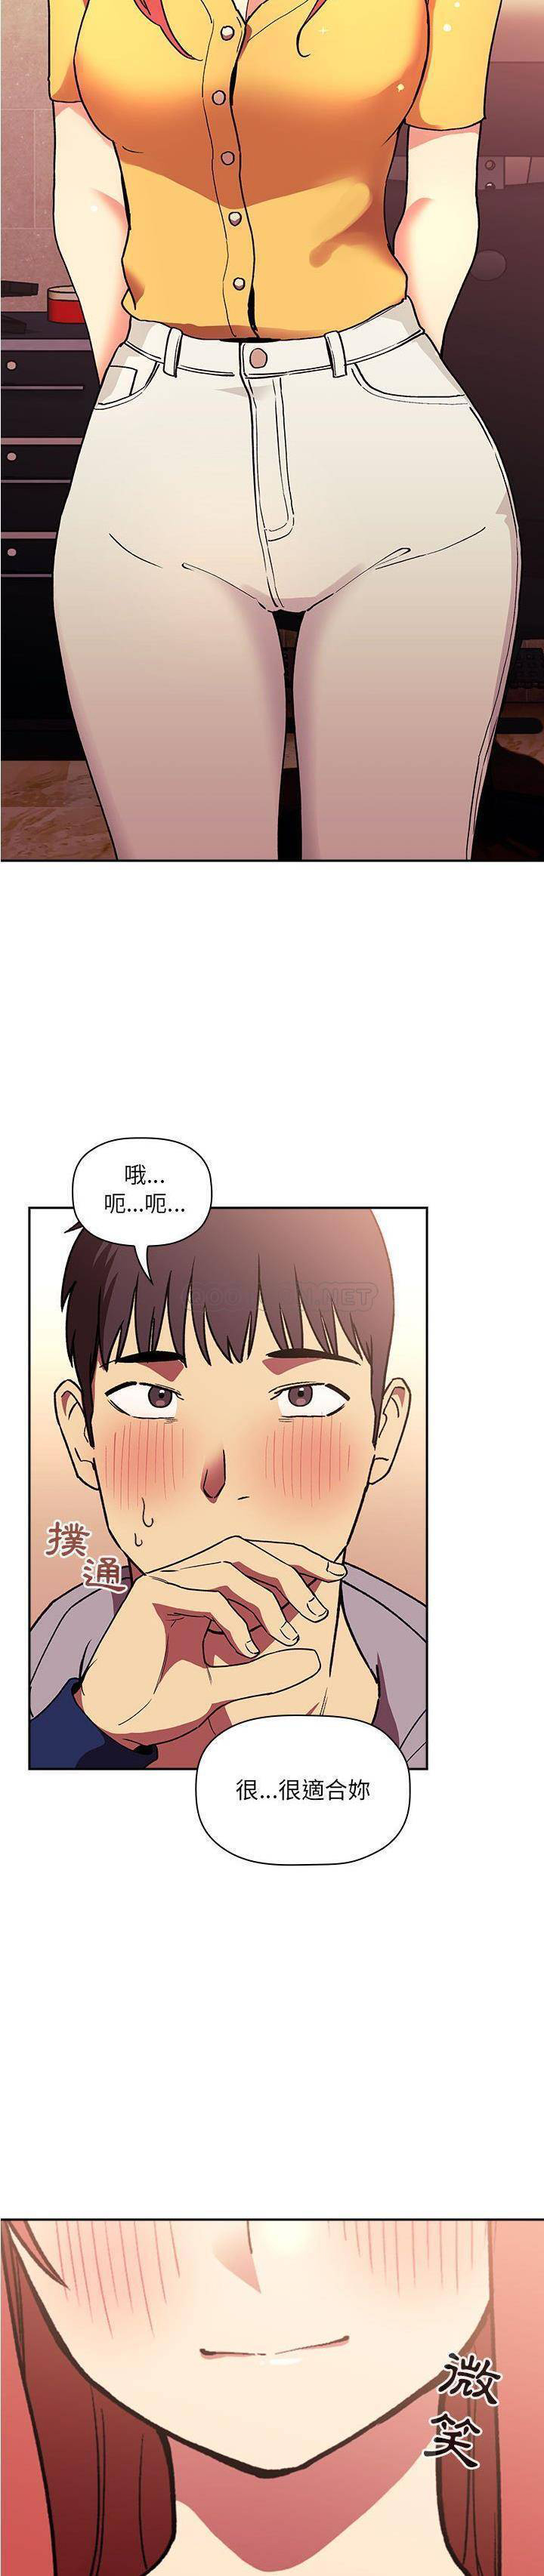 韩国污漫画 BJ的夢幻直播 第39话 20